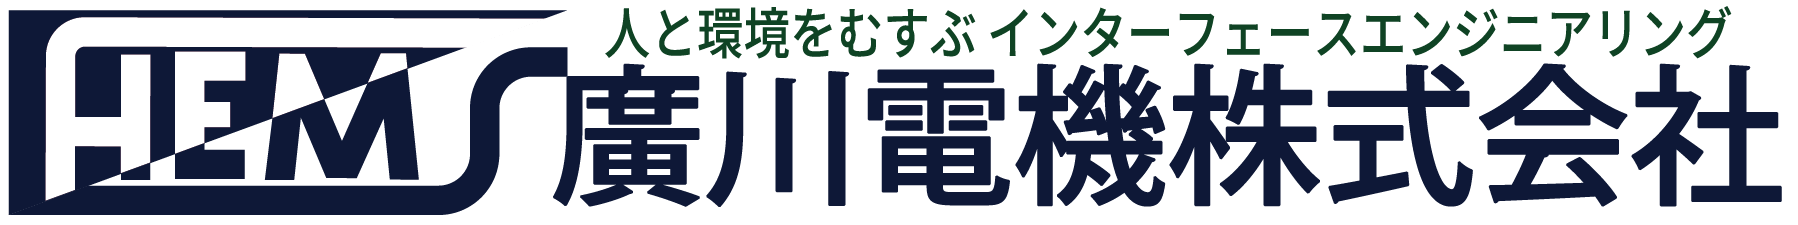 廣川電機株式会社